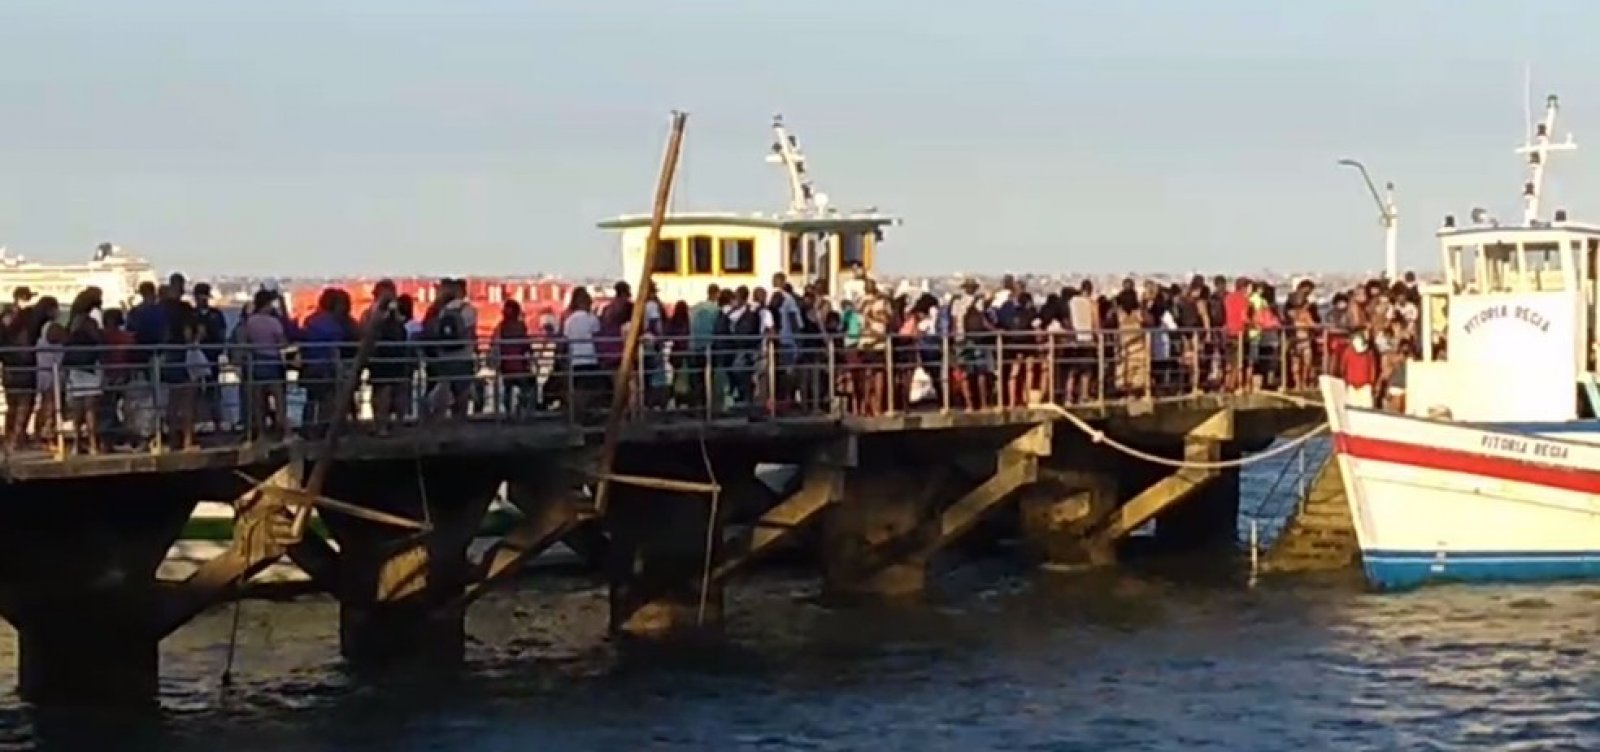 Com passageiros sem máscara, travessia Salvador - Mar Grande registra aglomerações